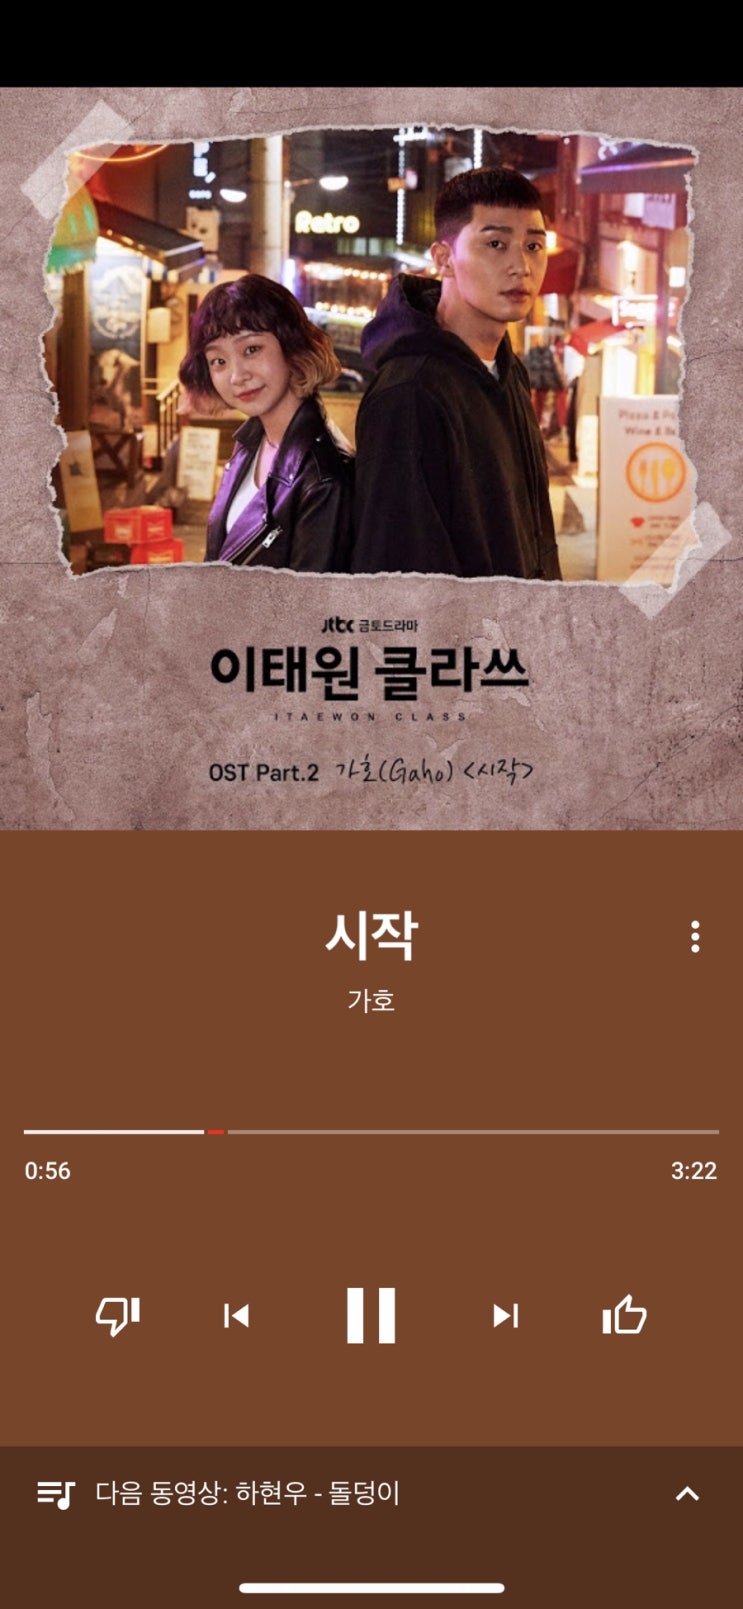 [MUSIC] 이태원 클라스 ost